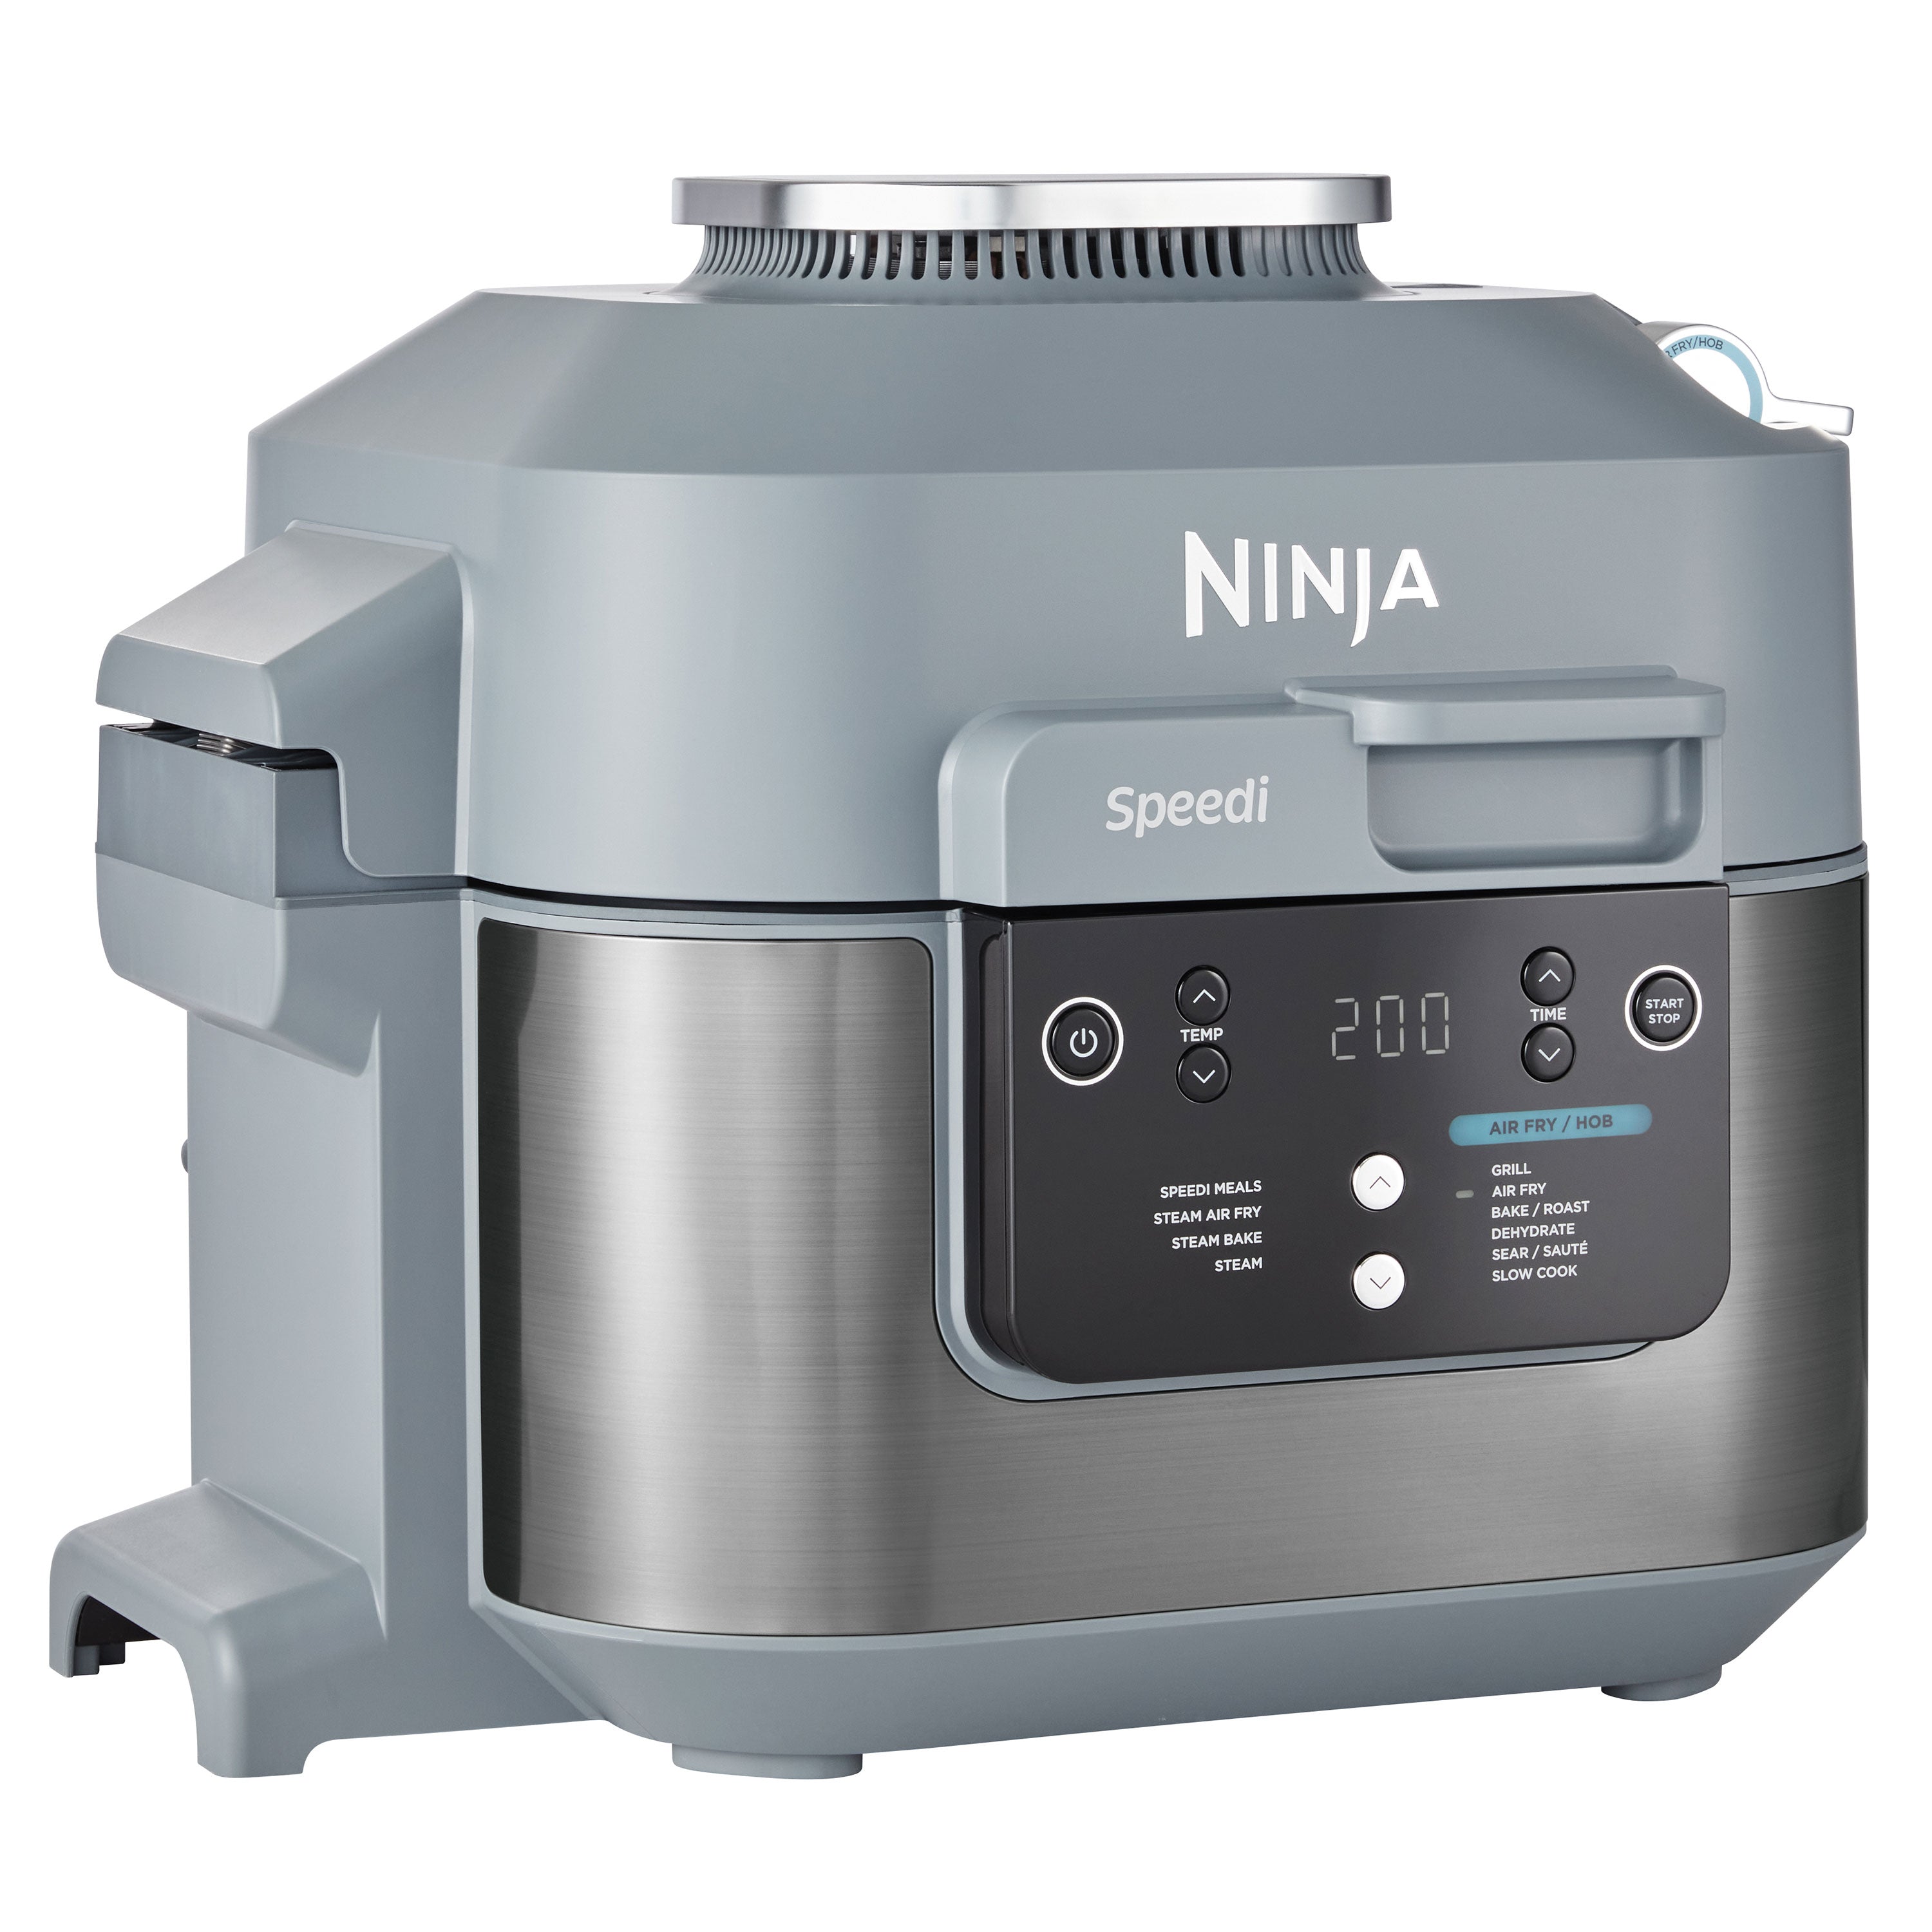 Ninja Speedi Rapid Cooker & Airfryer - ON400EU